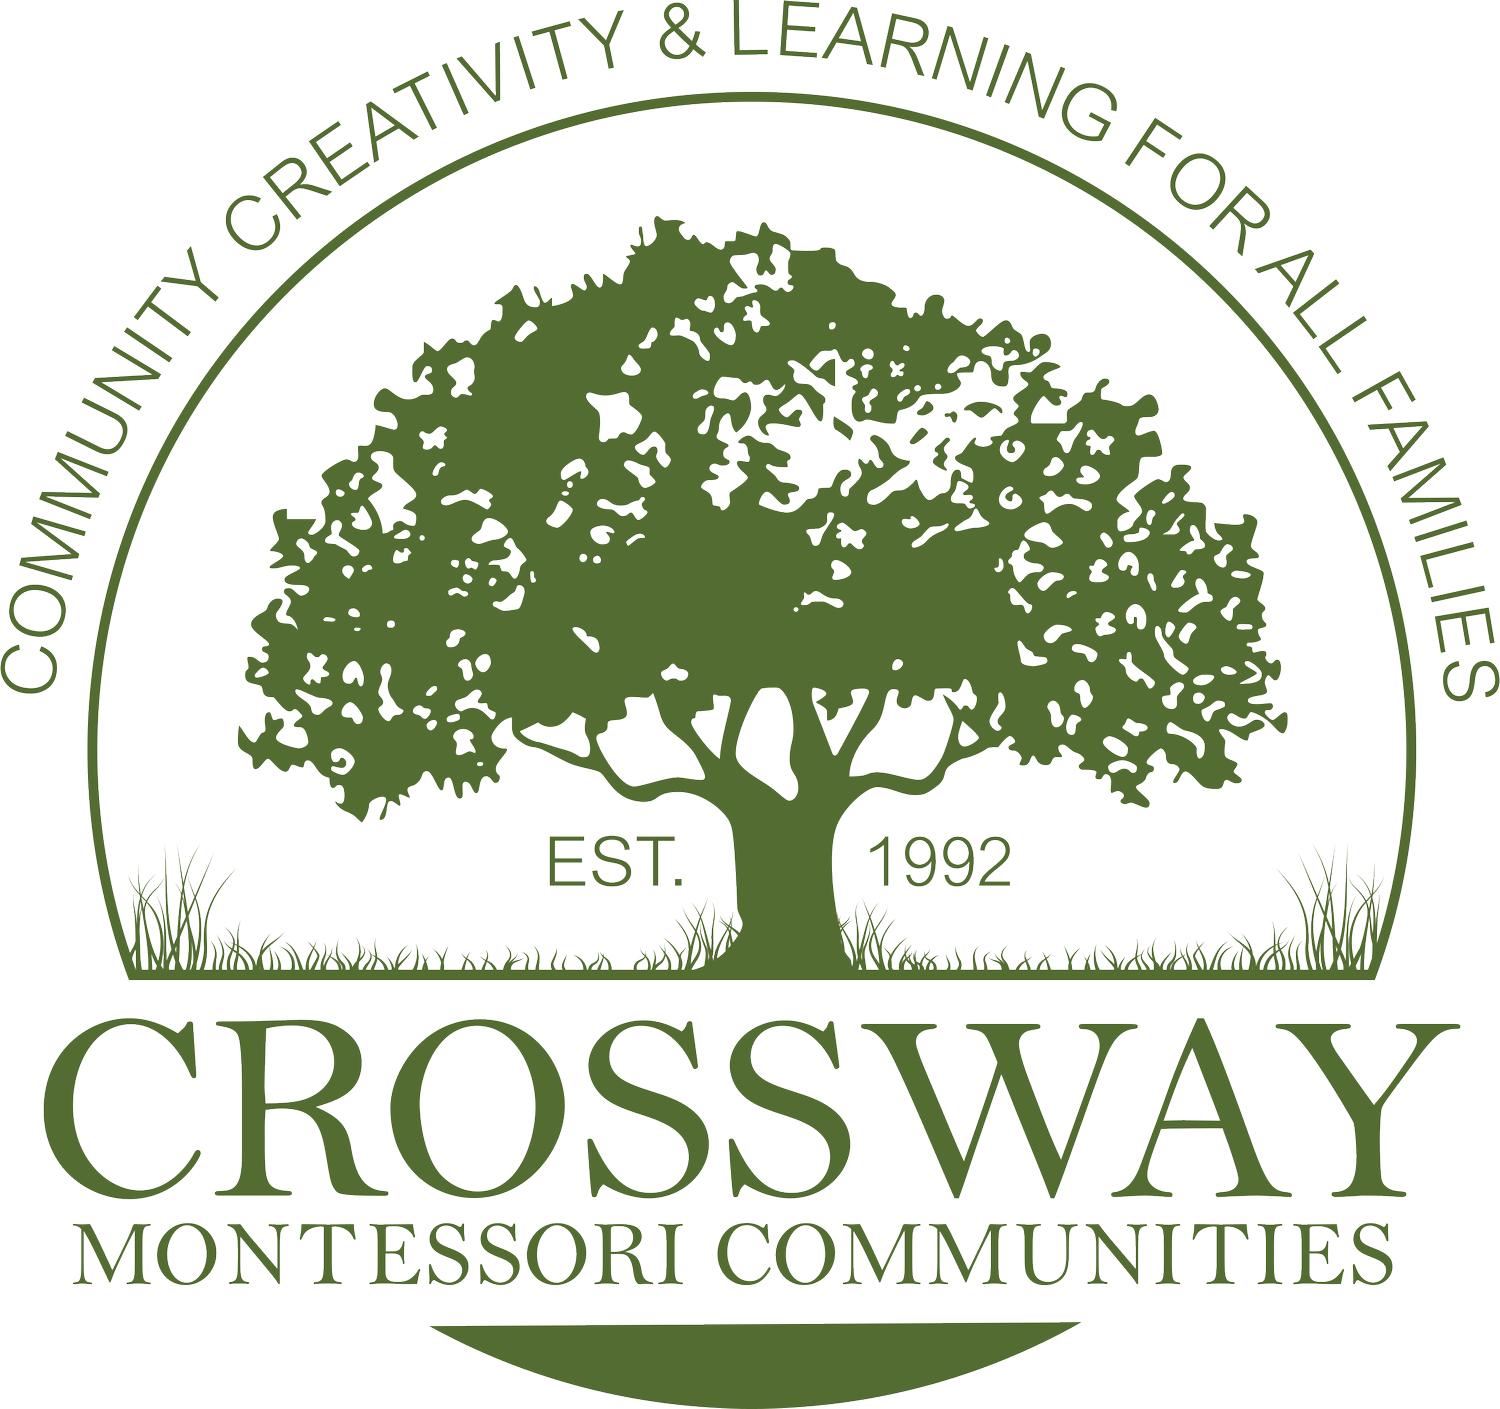 Crossway Montessori Communities